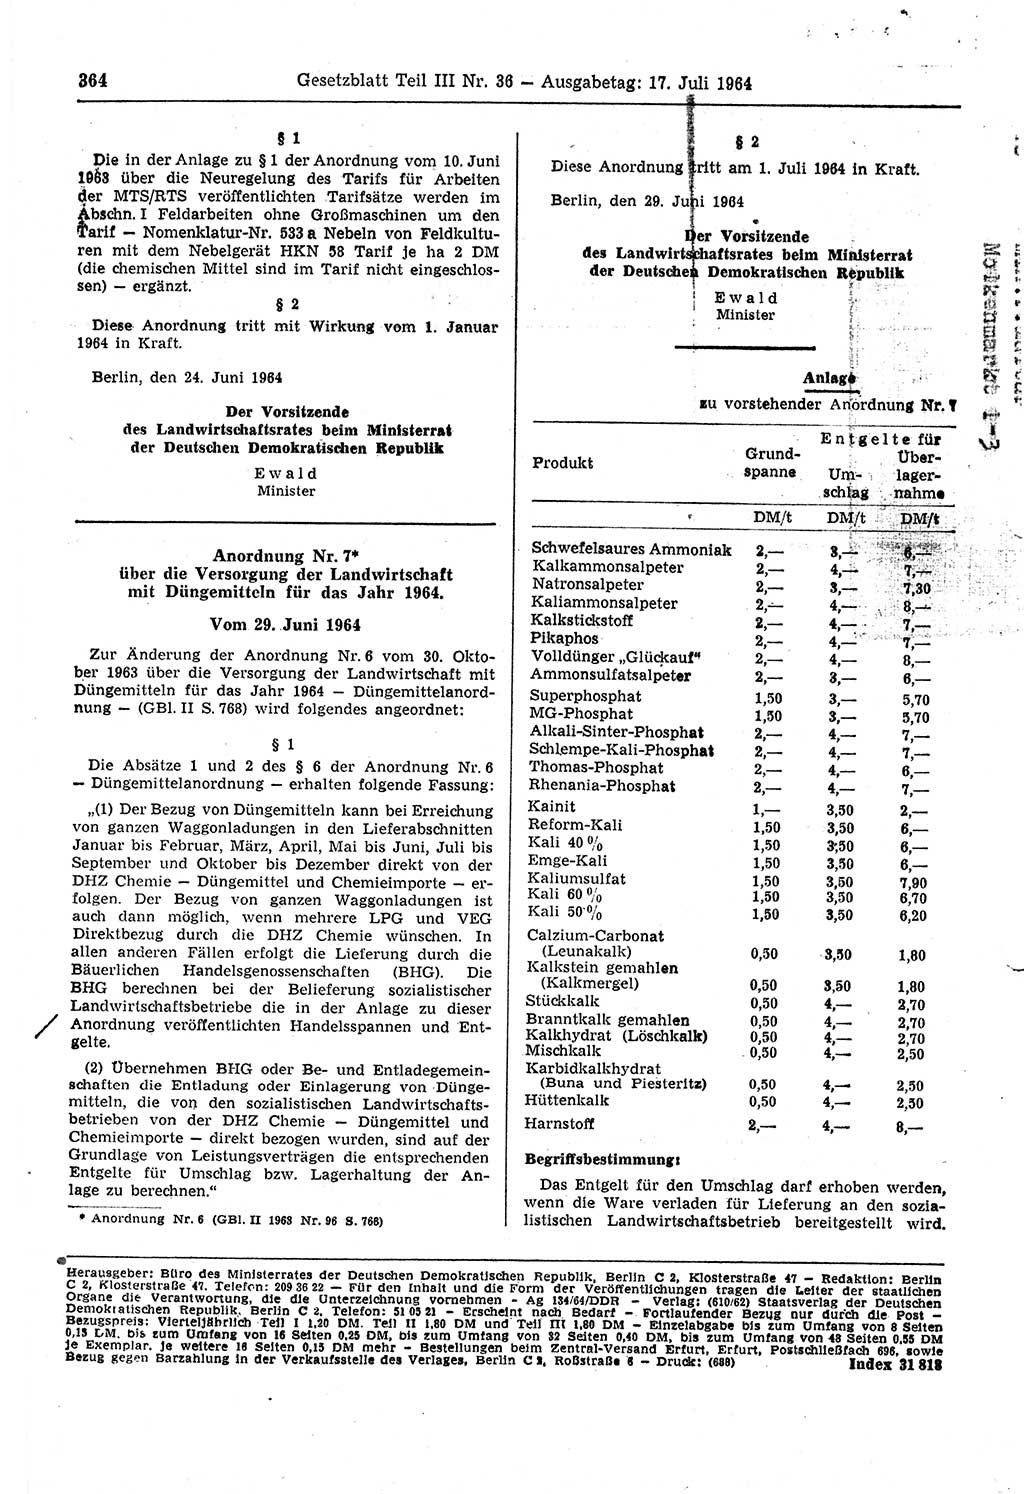 Gesetzblatt (GBl.) der Deutschen Demokratischen Republik (DDR) Teil ⅠⅠⅠ 1964, Seite 364 (GBl. DDR ⅠⅠⅠ 1964, S. 364)